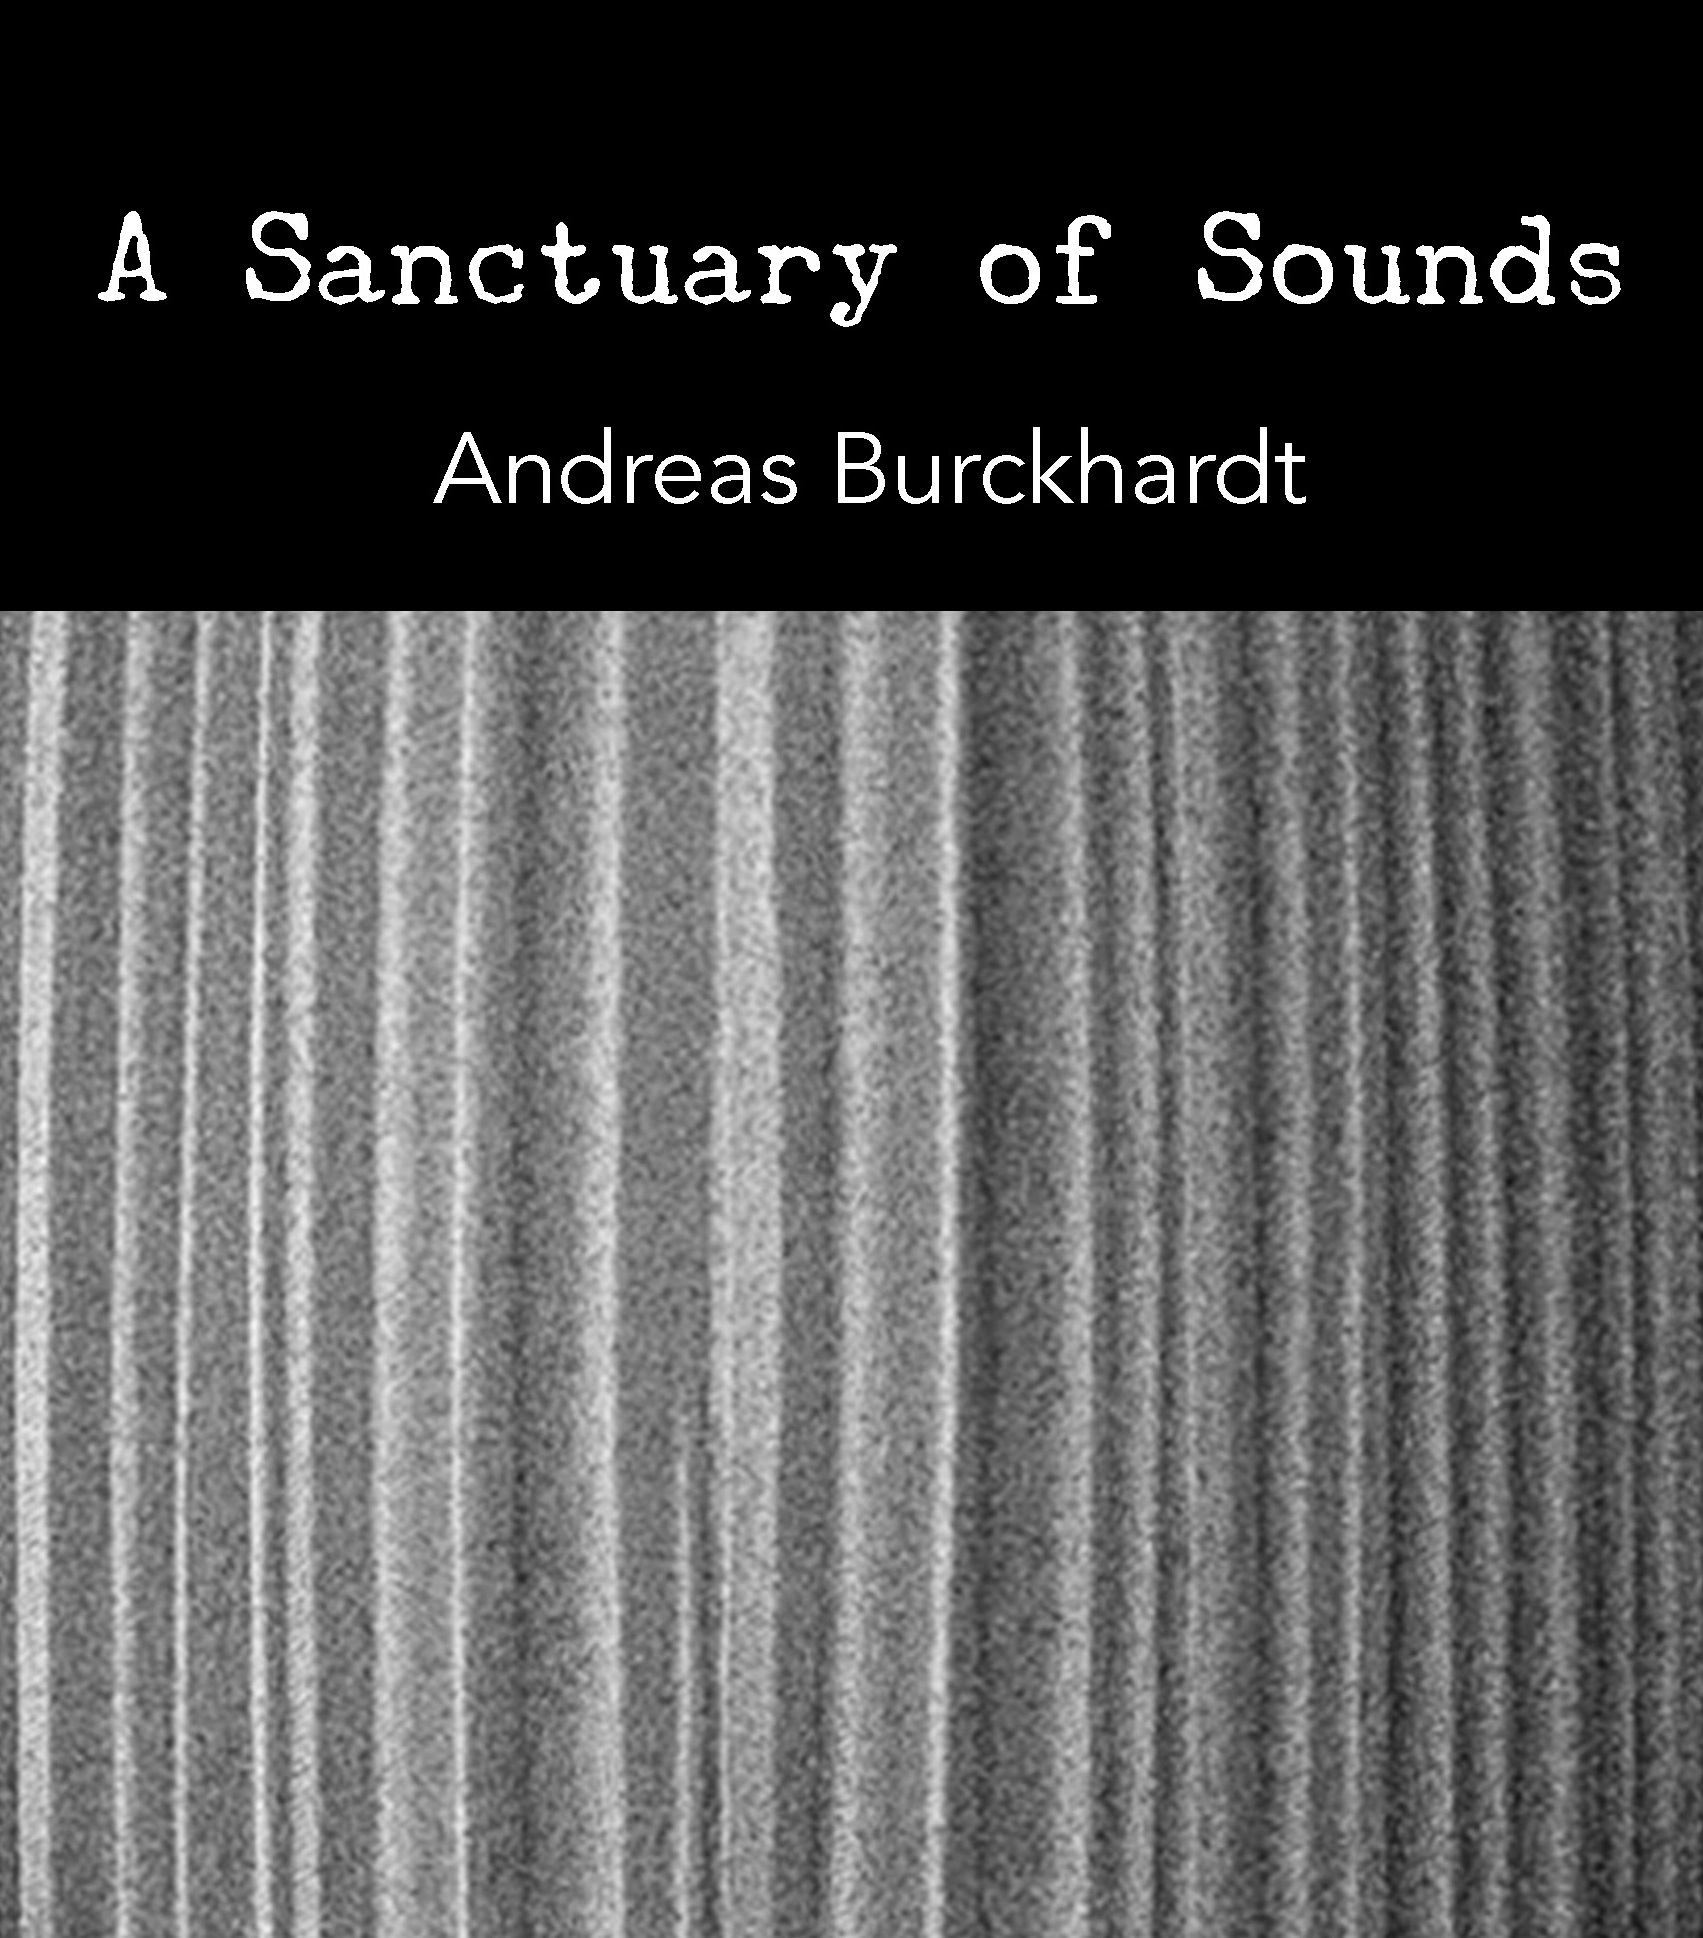 sound/music – punctum books